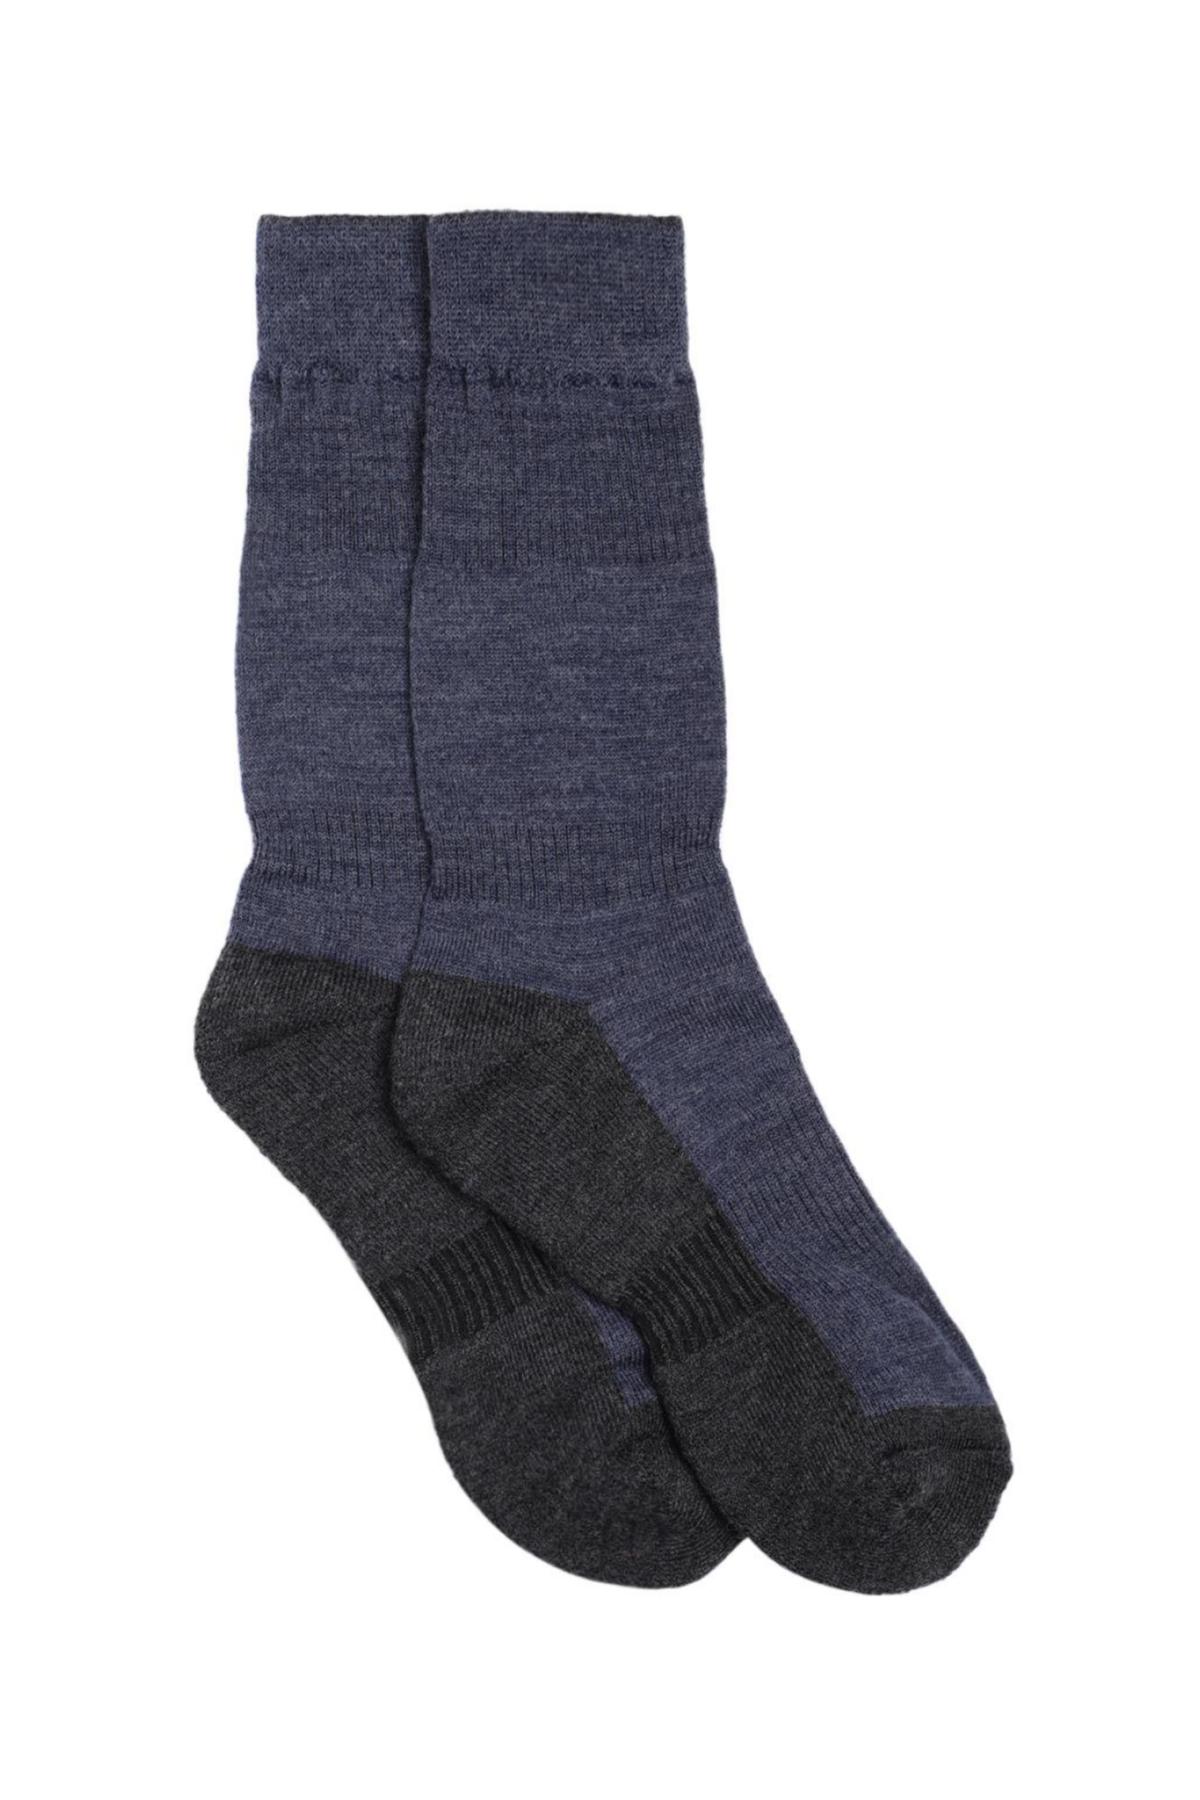 Namik No Blister Merino Wool Navy-Charcoal Regular Socks | Men